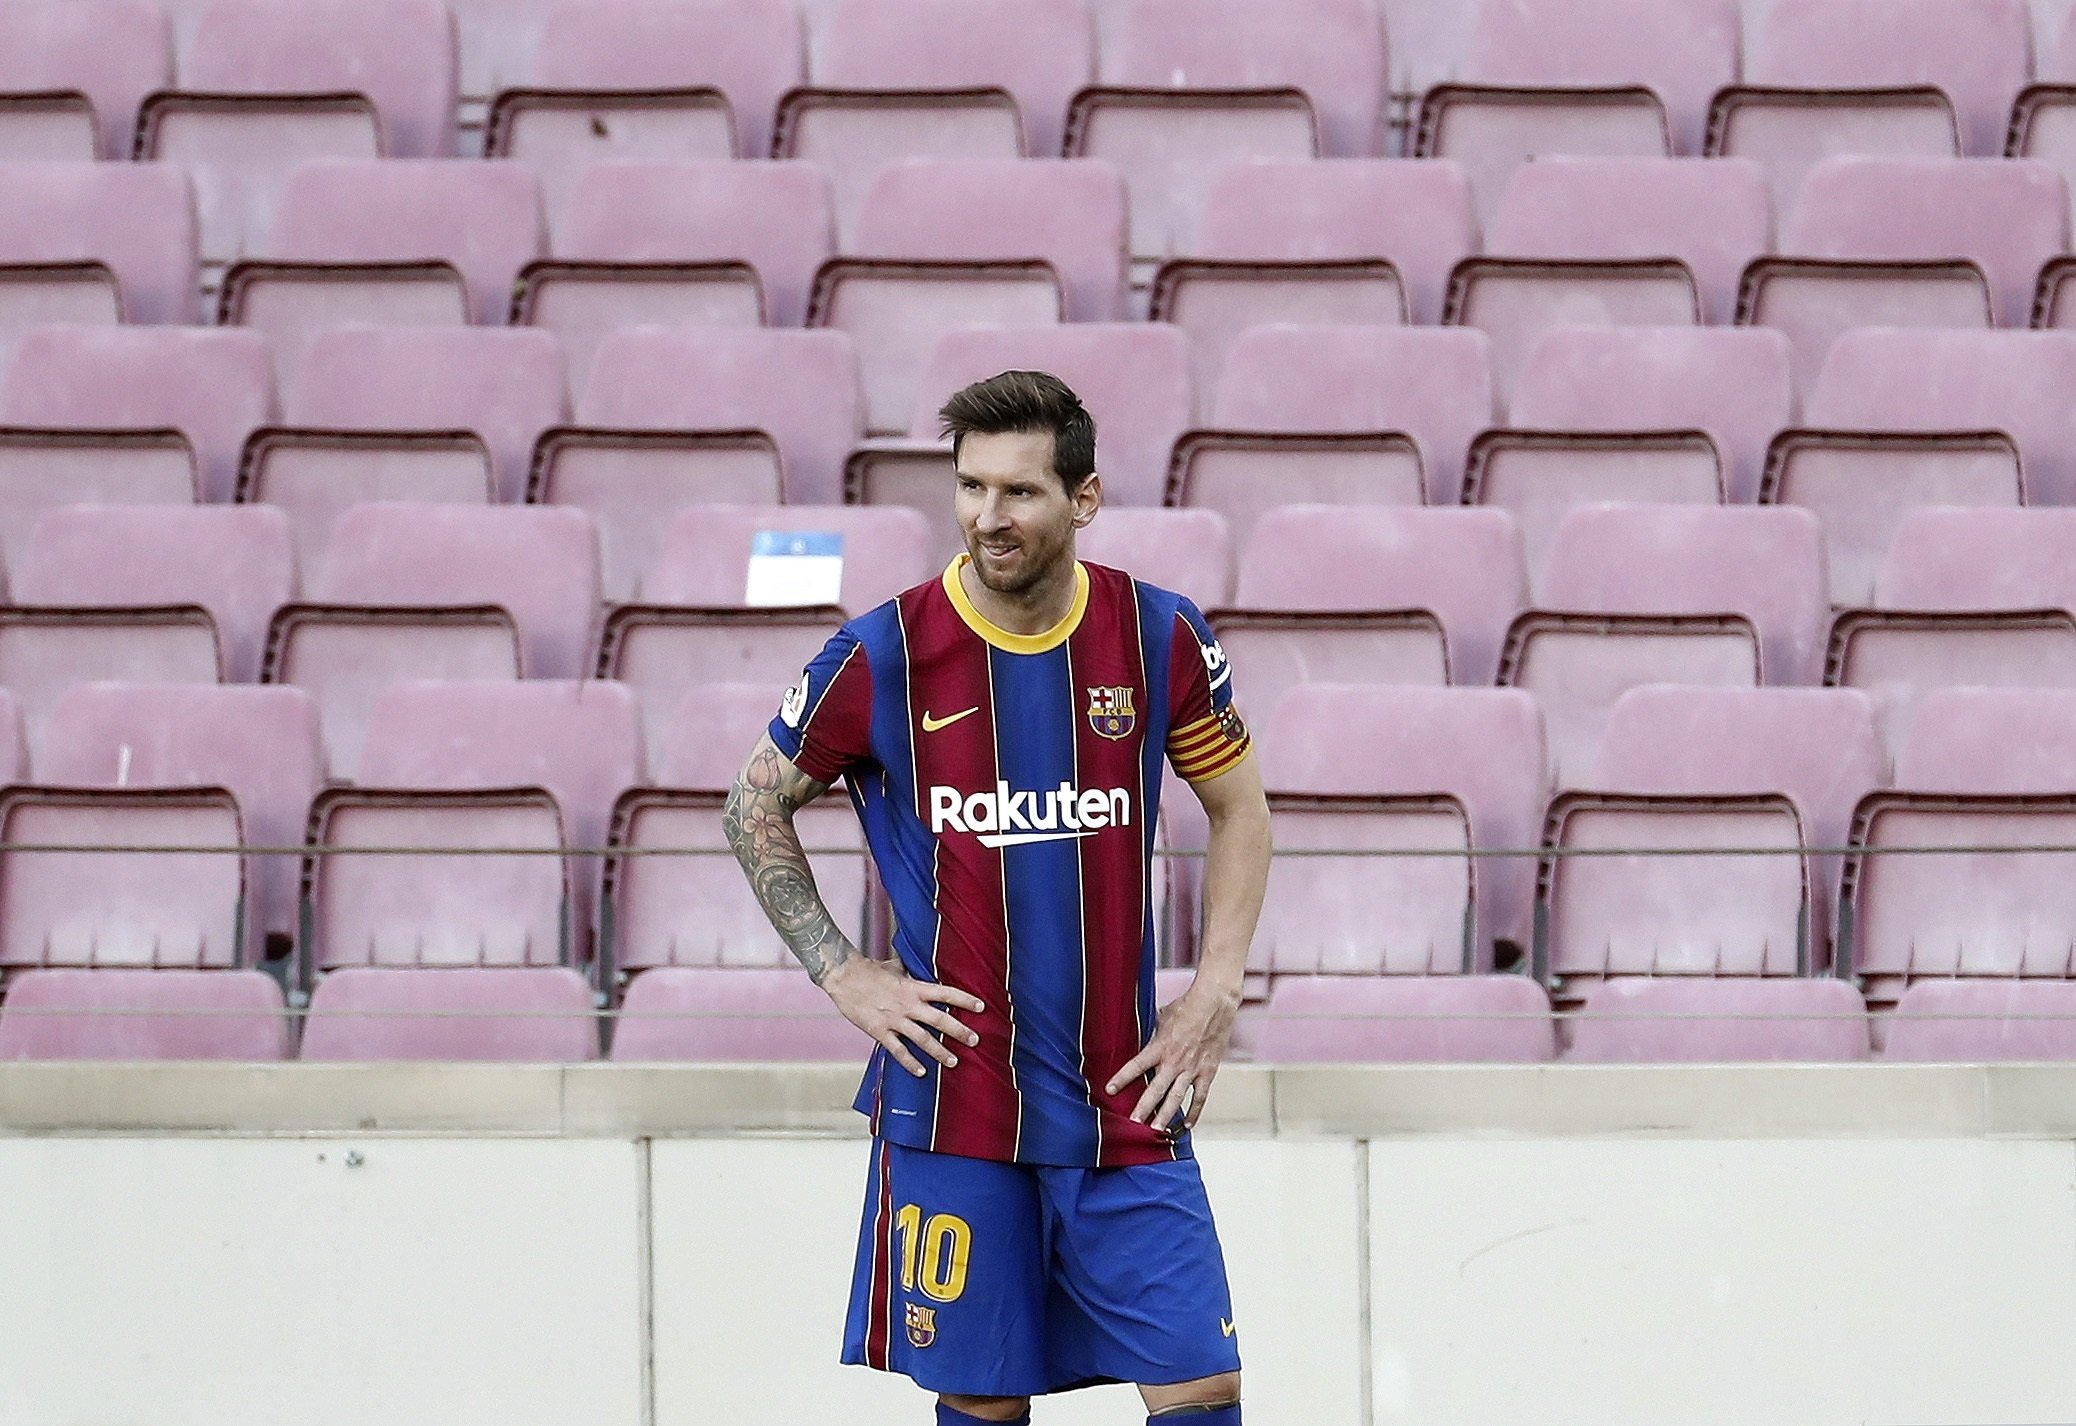 La incorporació de Pochettino podria facilitar l'arribada de Messi al PSG